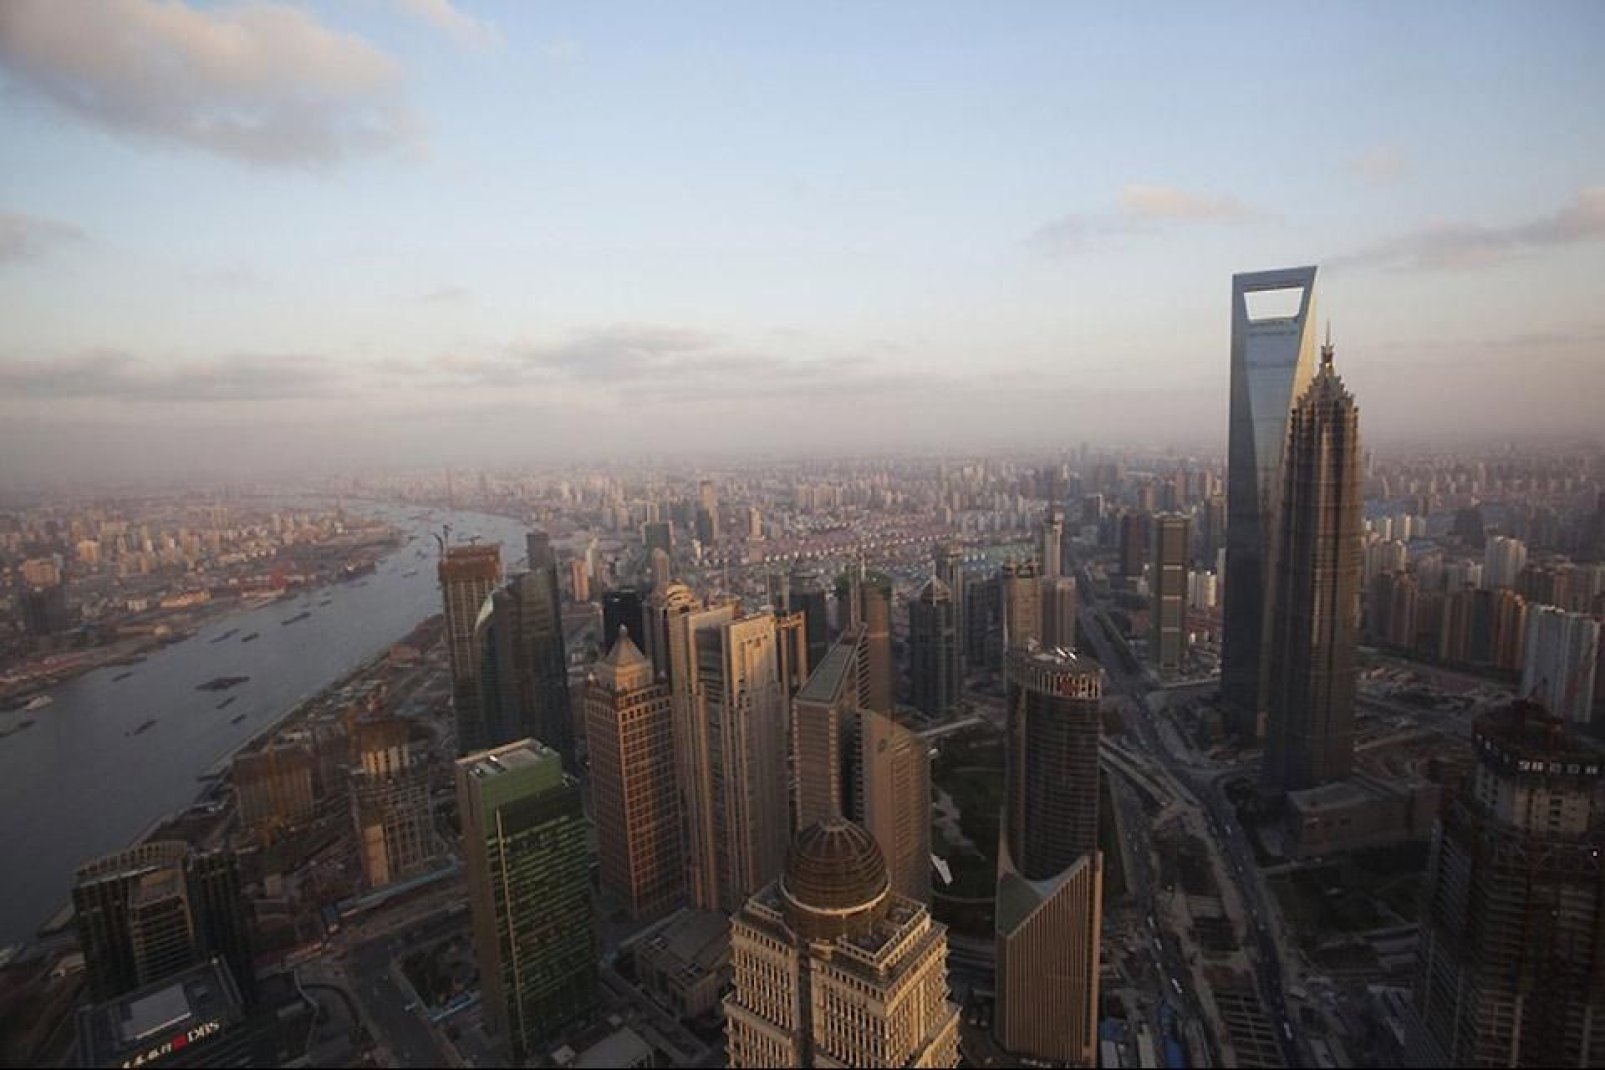 Panoramaansicht von Shanghai Im Geschäftsviertel der Stadt kann man den Shanghai Tower erkennen.